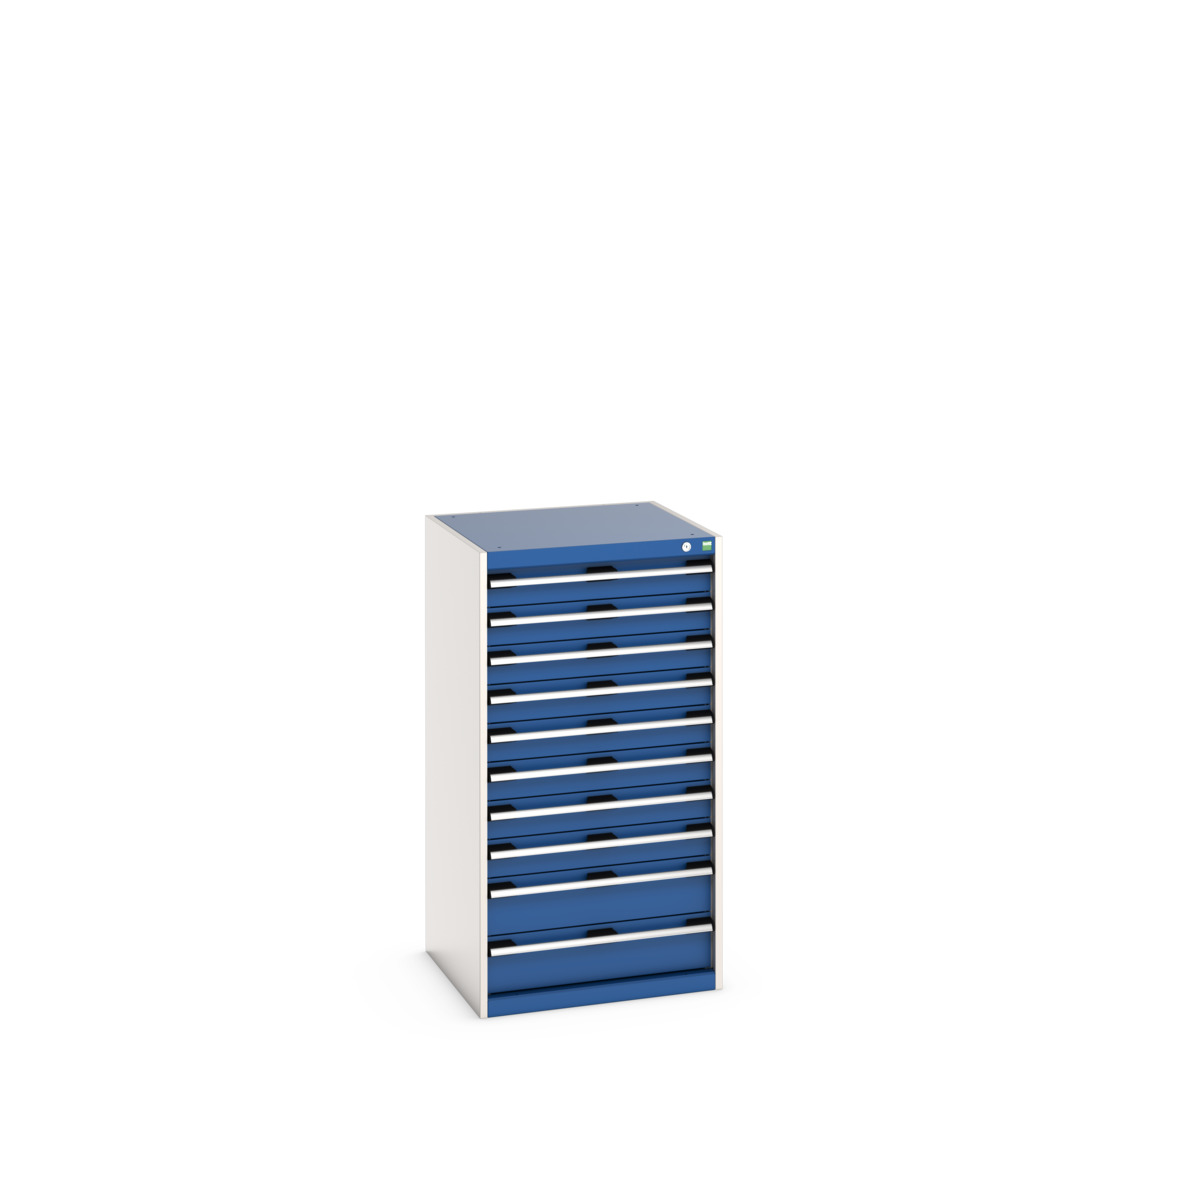 40019075.11V - cubio drawer cabinet